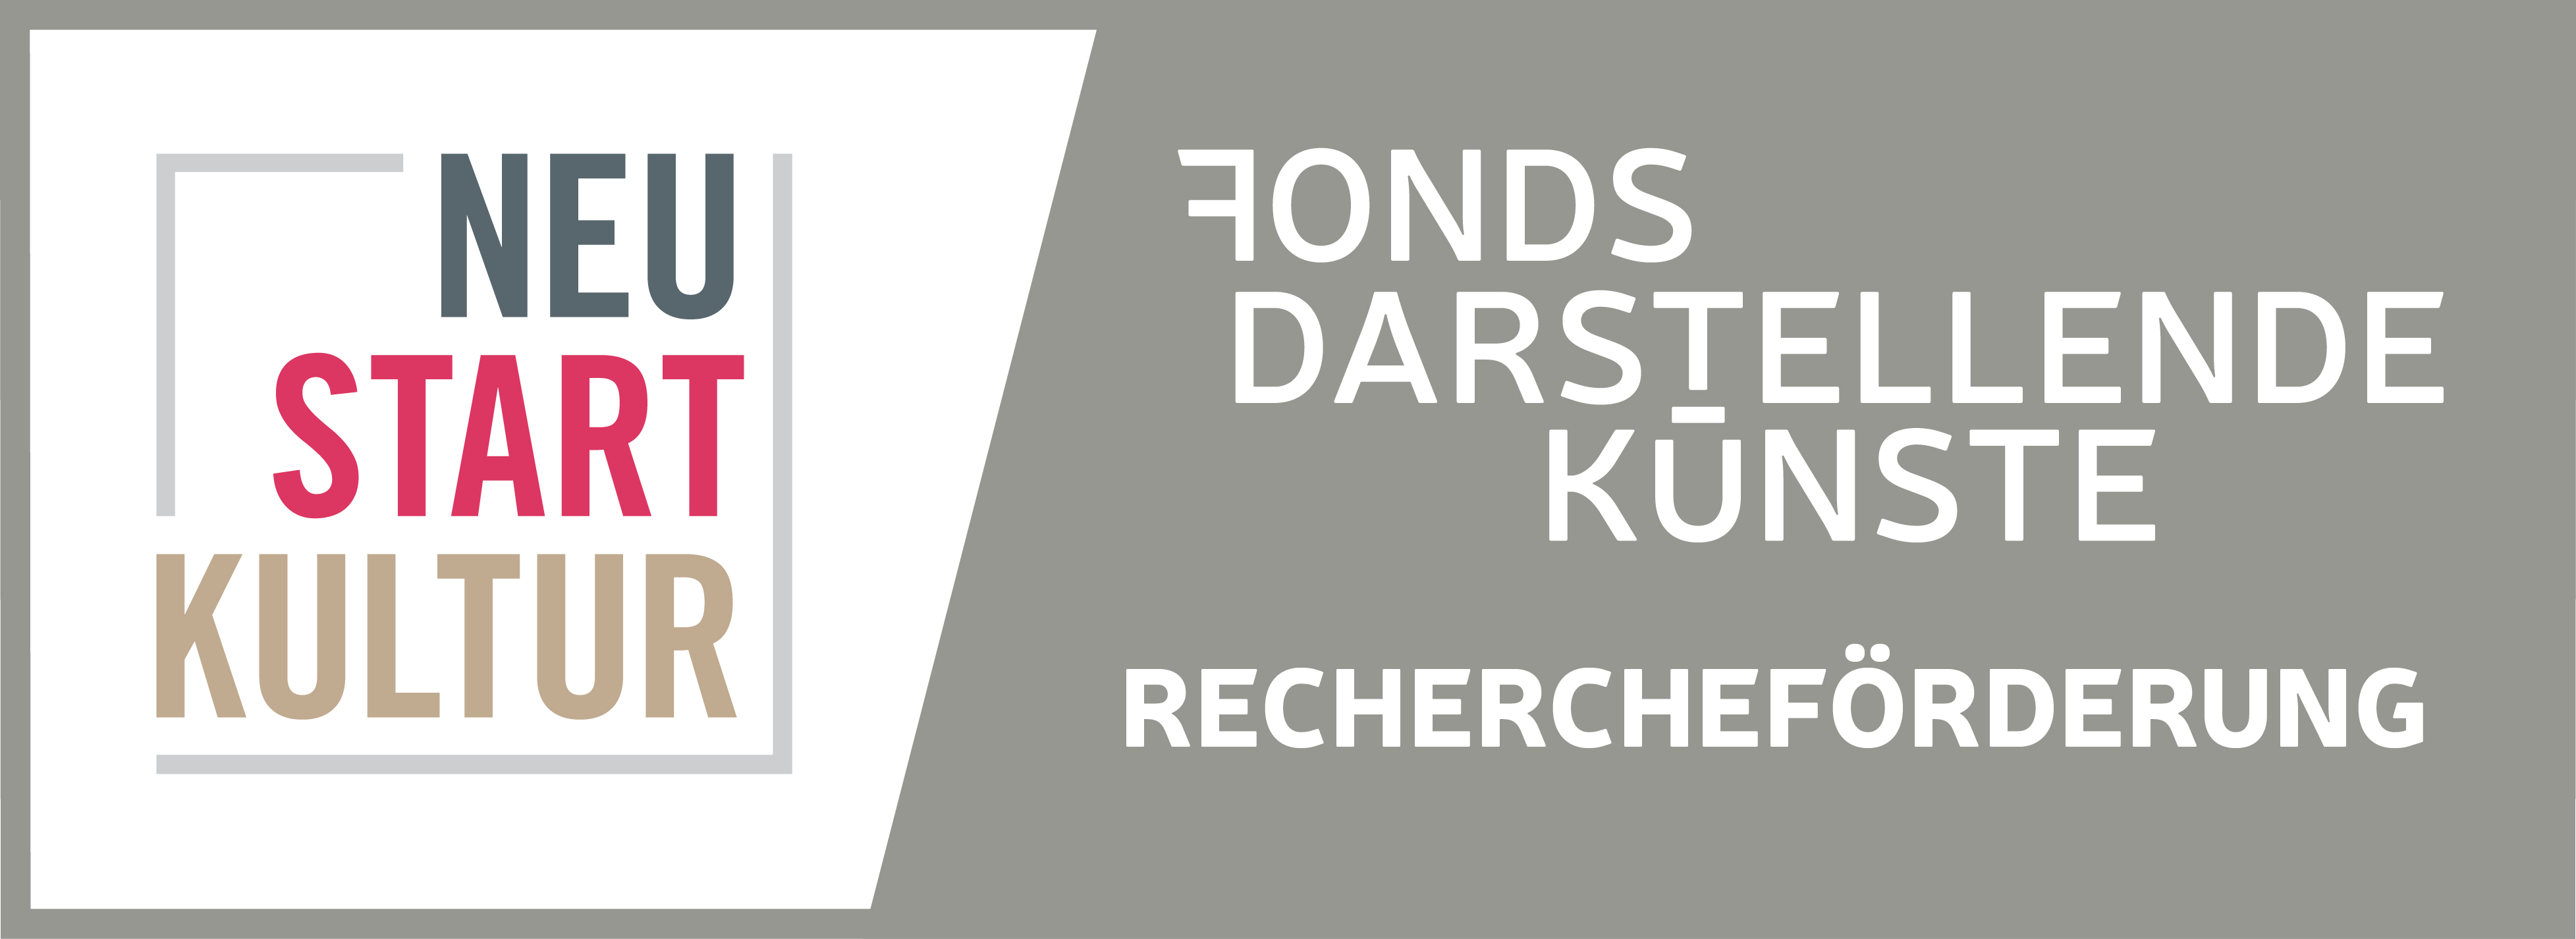 Logo Fond Darstellende Künste